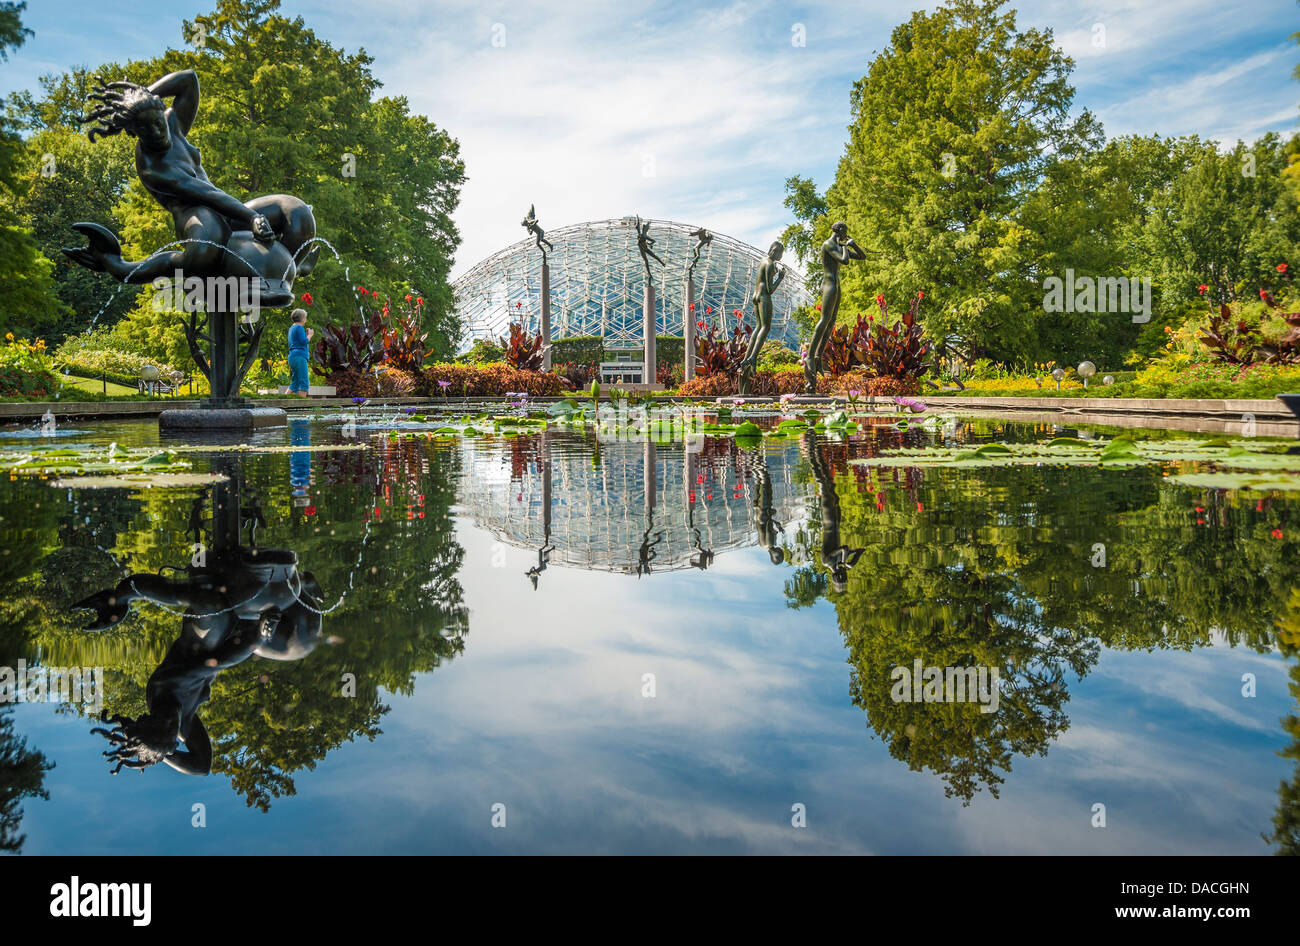 Die Climatron im Missouri Botanical Garden in St. Louis, Missouri, Vereinigte Staaten von Amerika Stockfoto